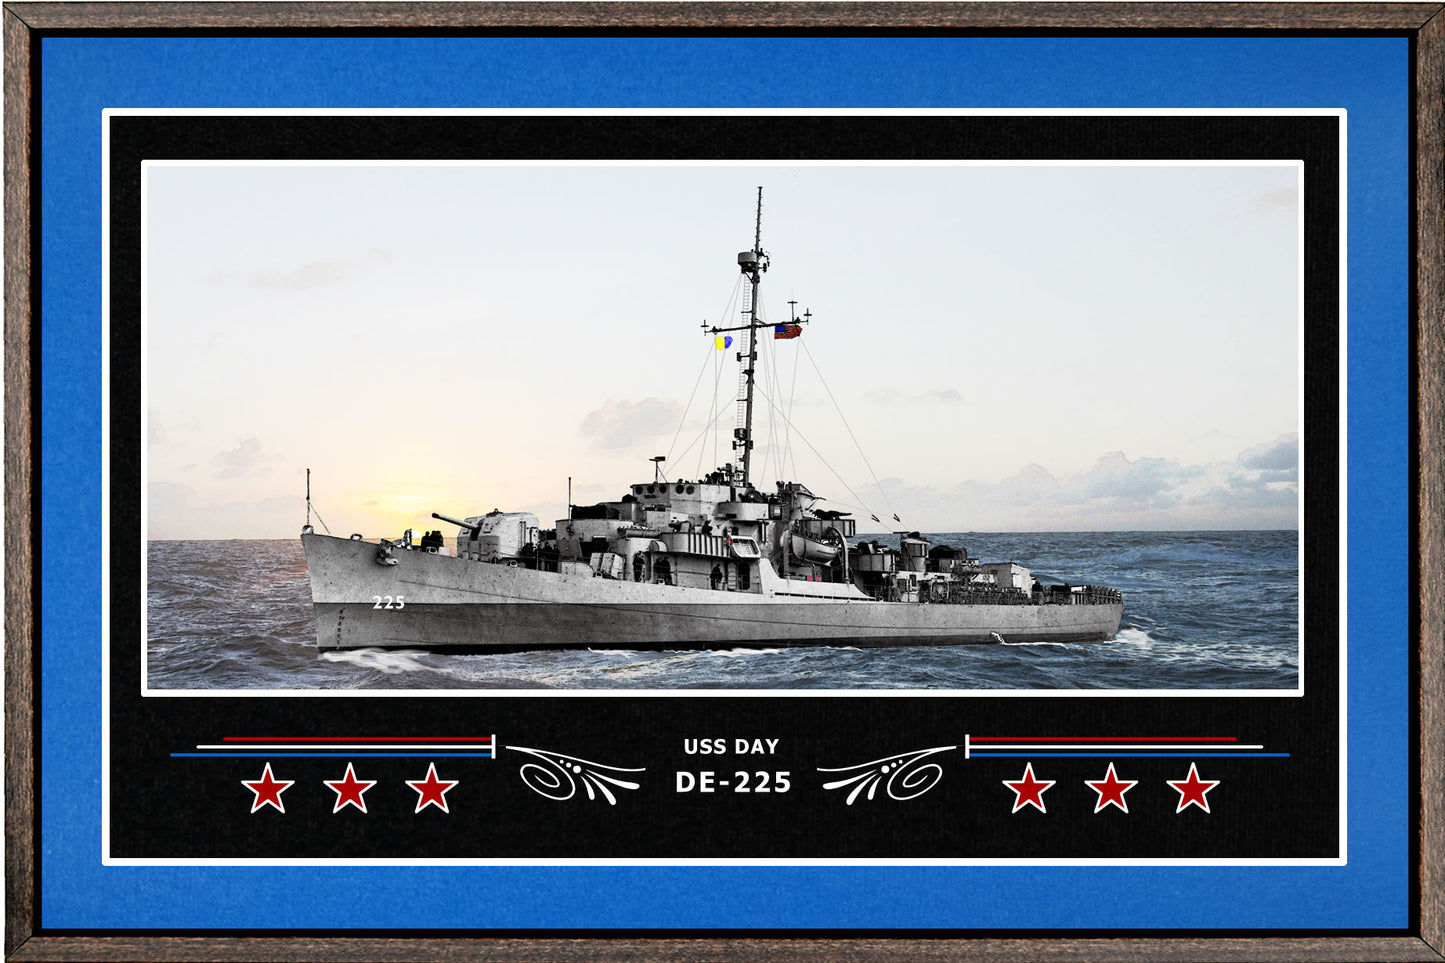 USS DAY DE 225 BOX FRAMED CANVAS ART BLUE